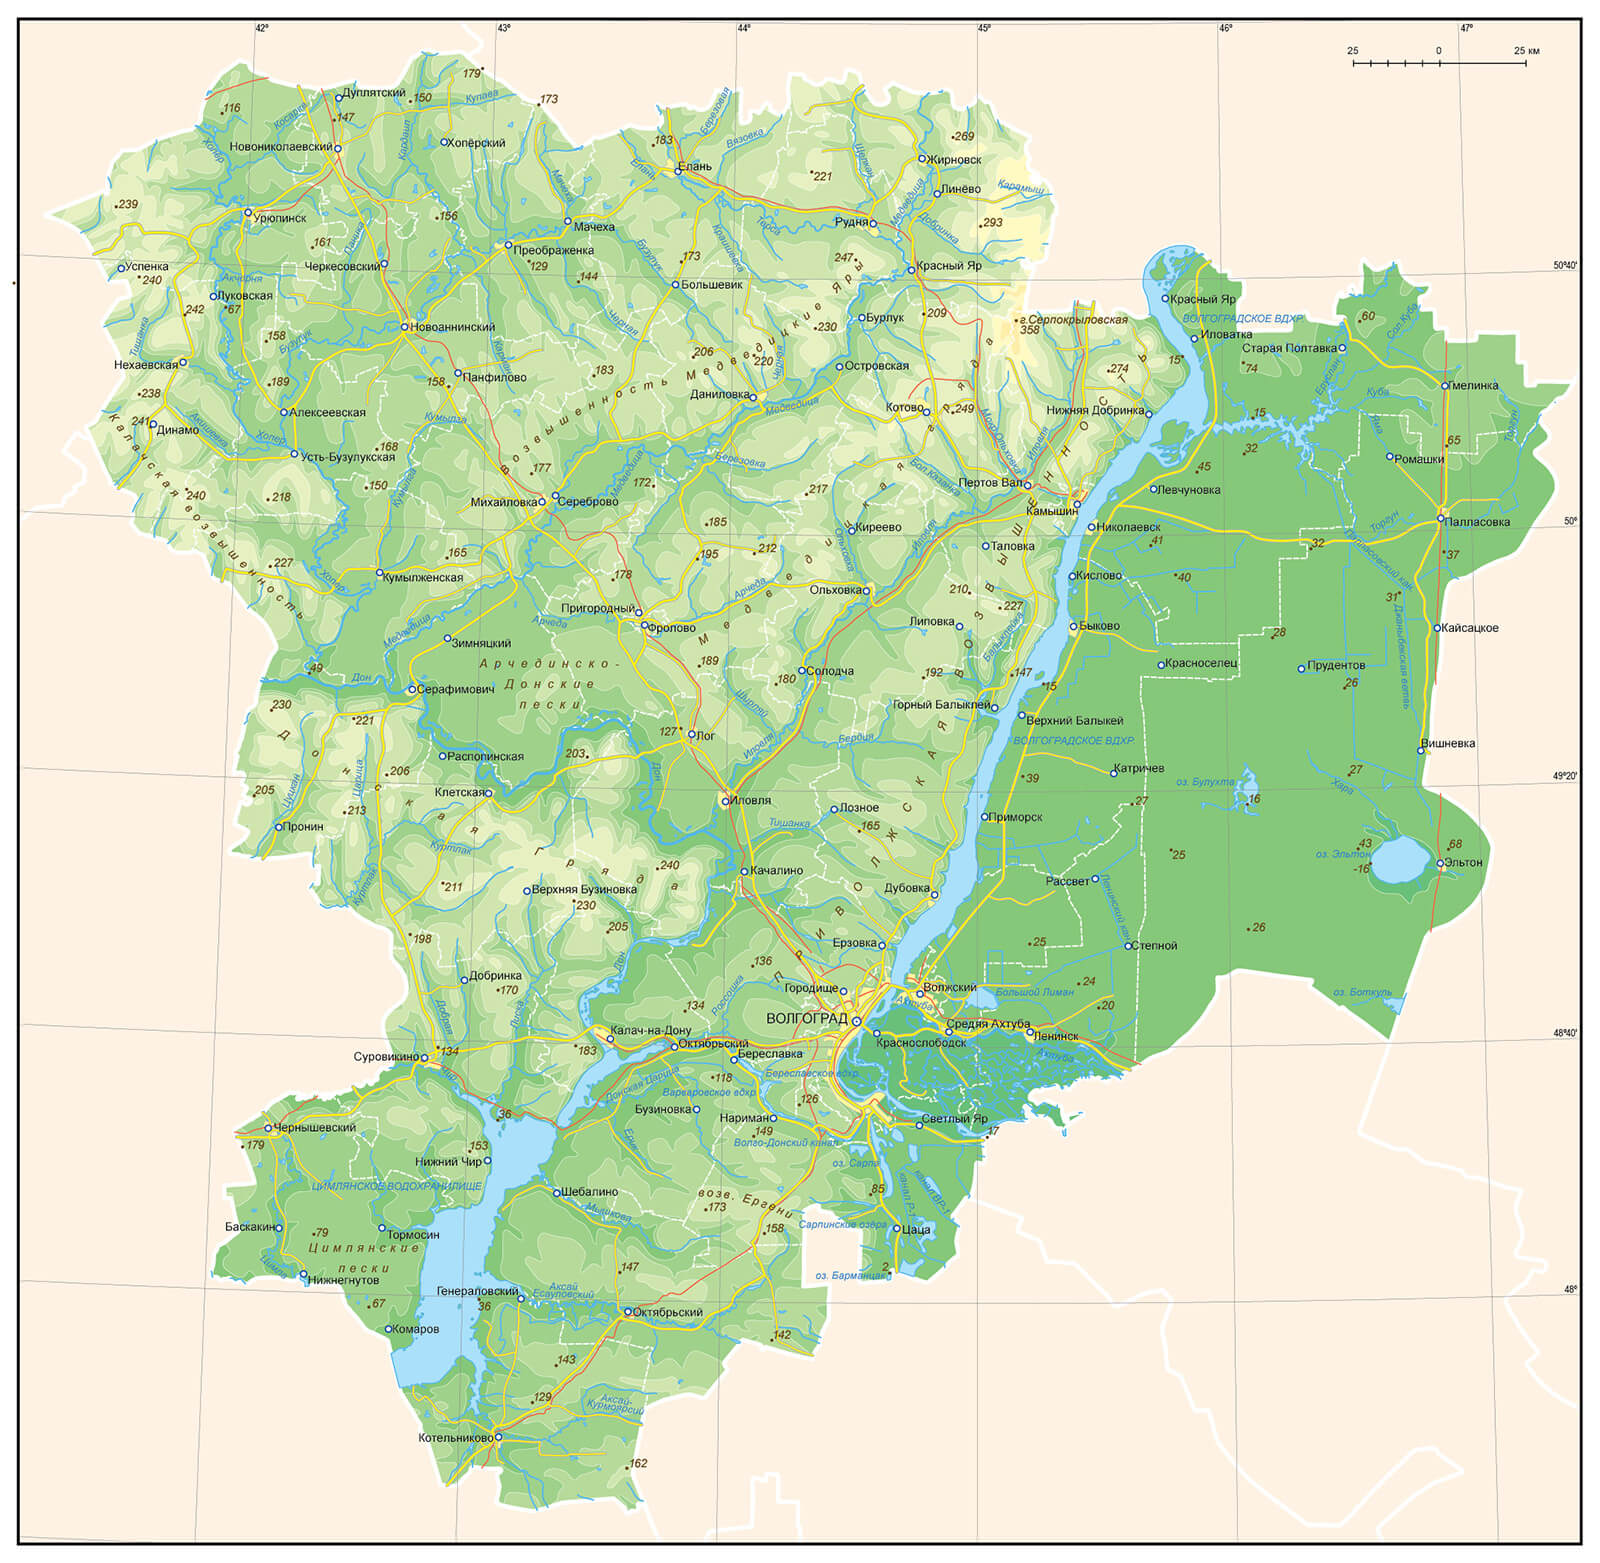 Кадастровая карта калач на дону волгоградской области